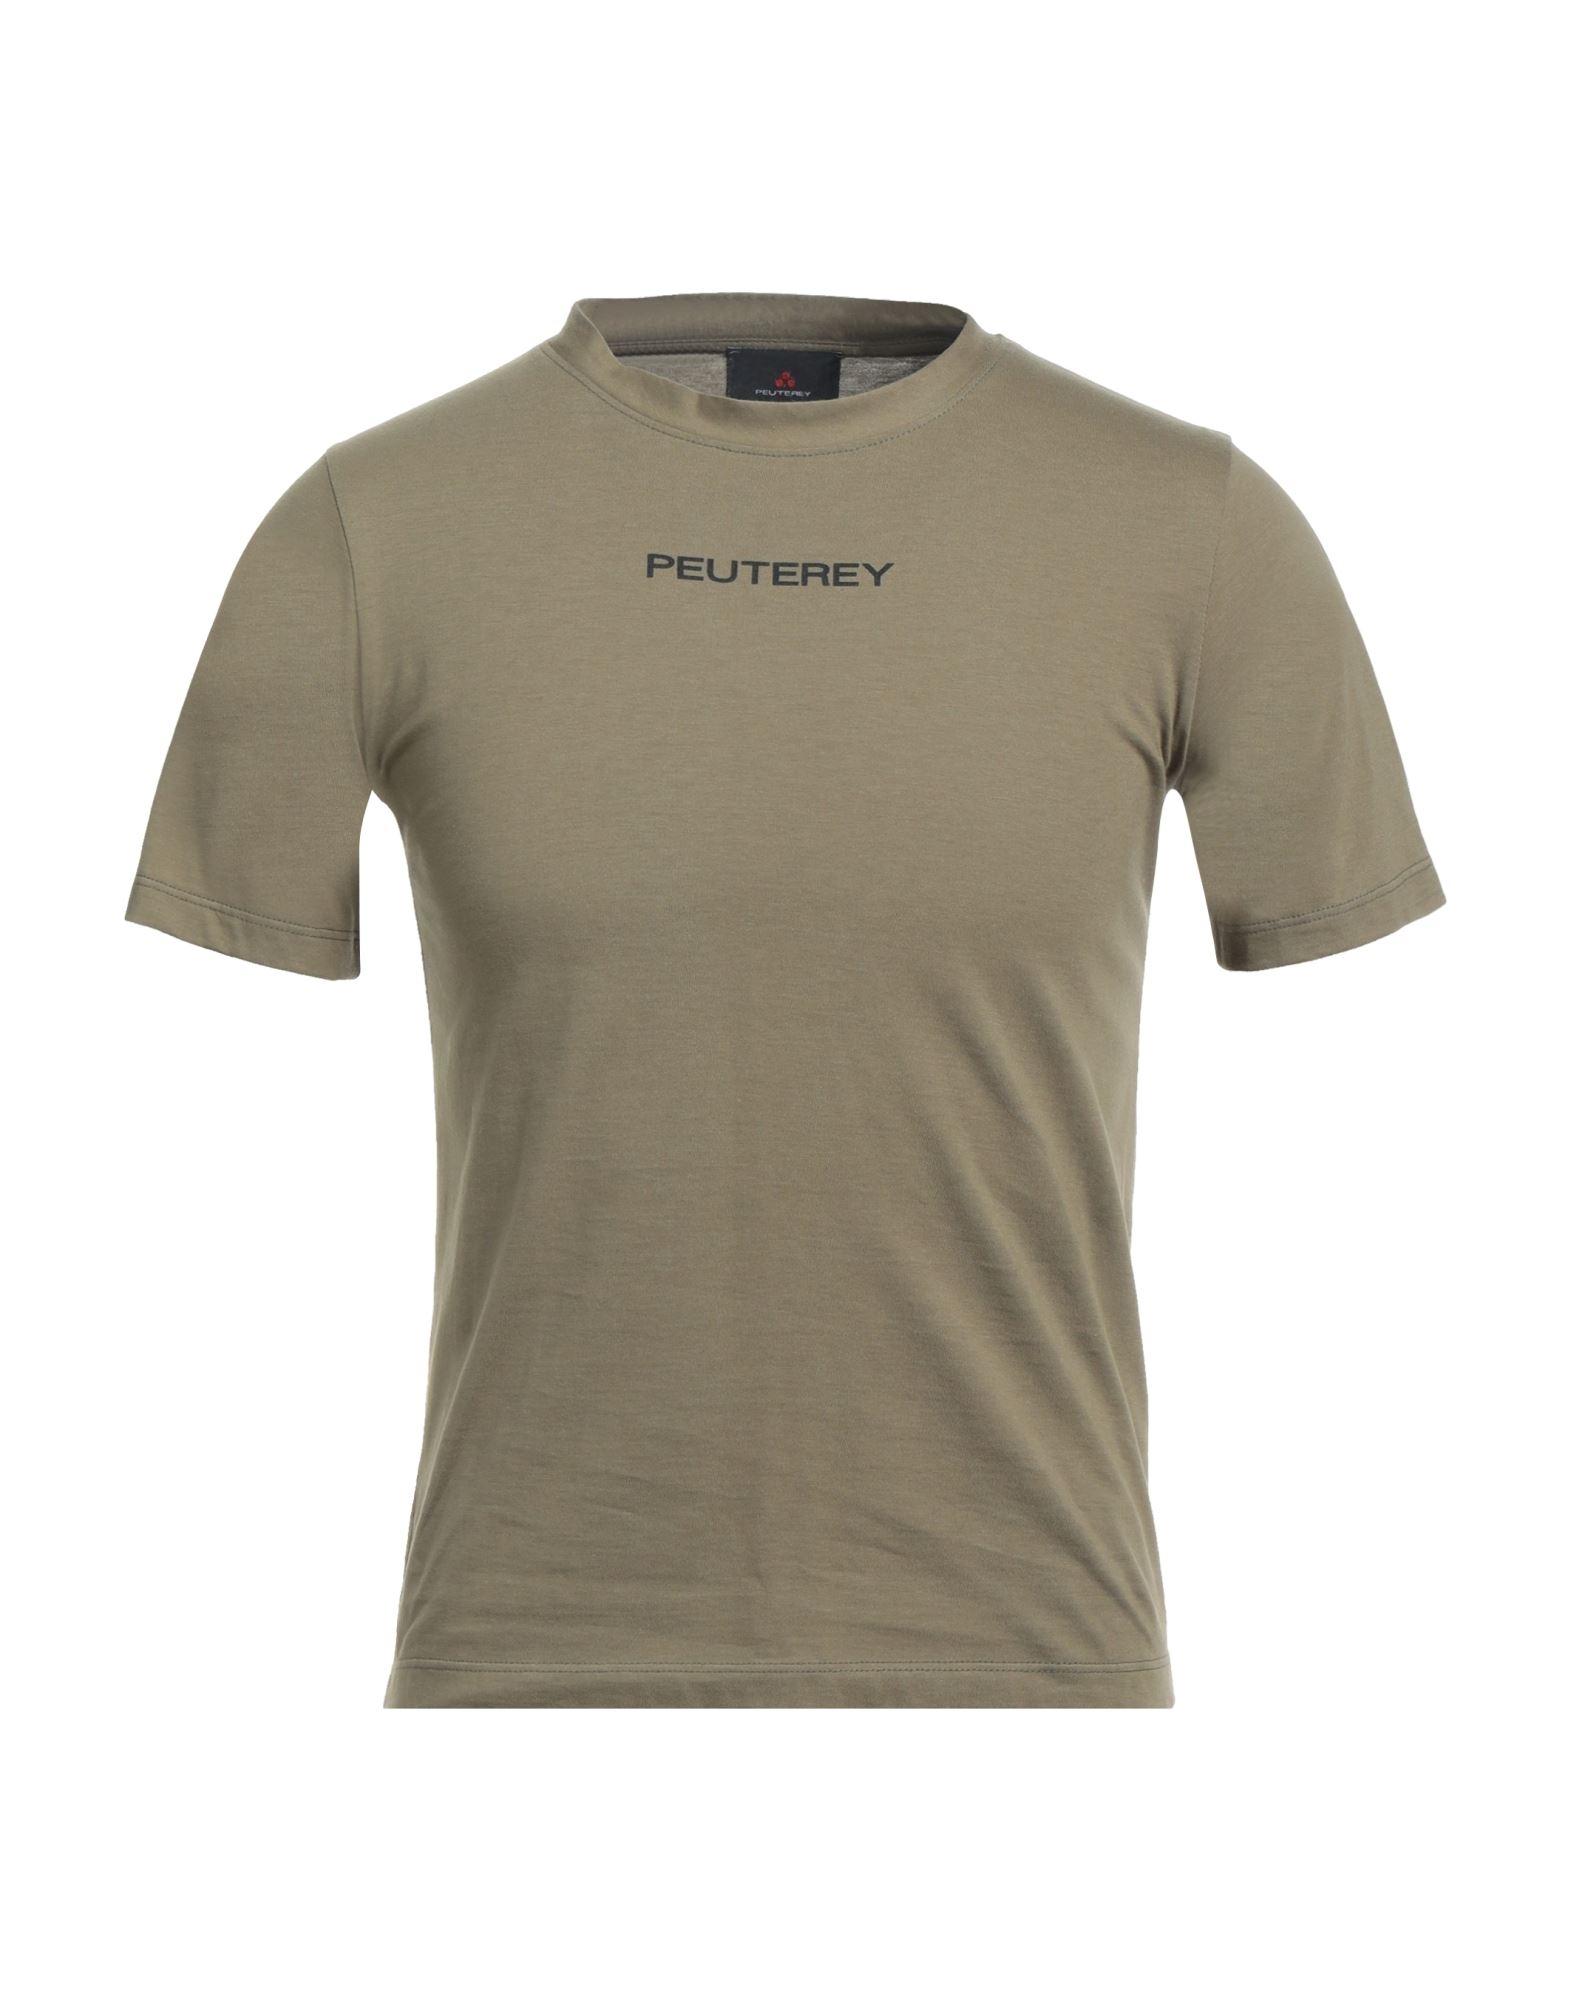 PEUTEREY T-shirts Herren Militärgrün von PEUTEREY